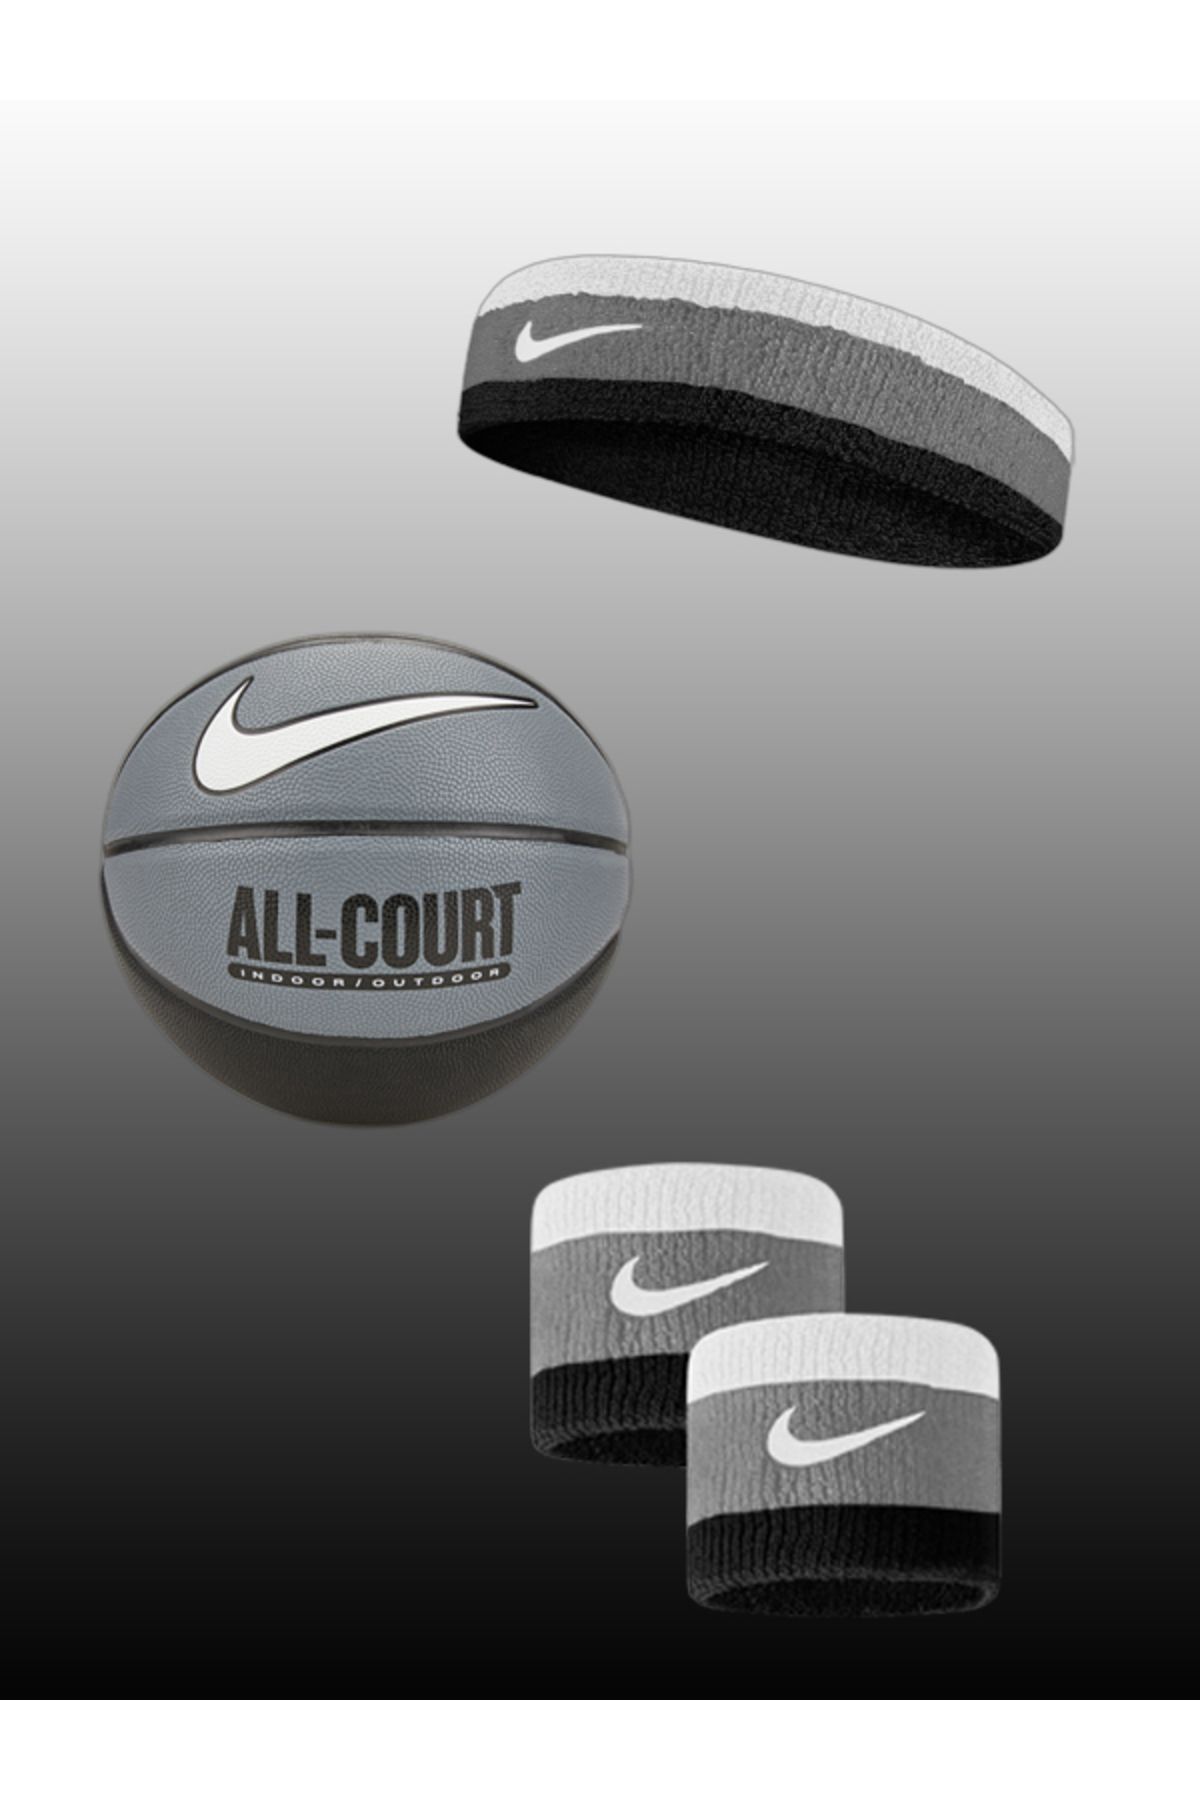 Nike 3'lü Basketbol Topu ve Aksesuar Seti - Yılbaşı Özel Fiyat